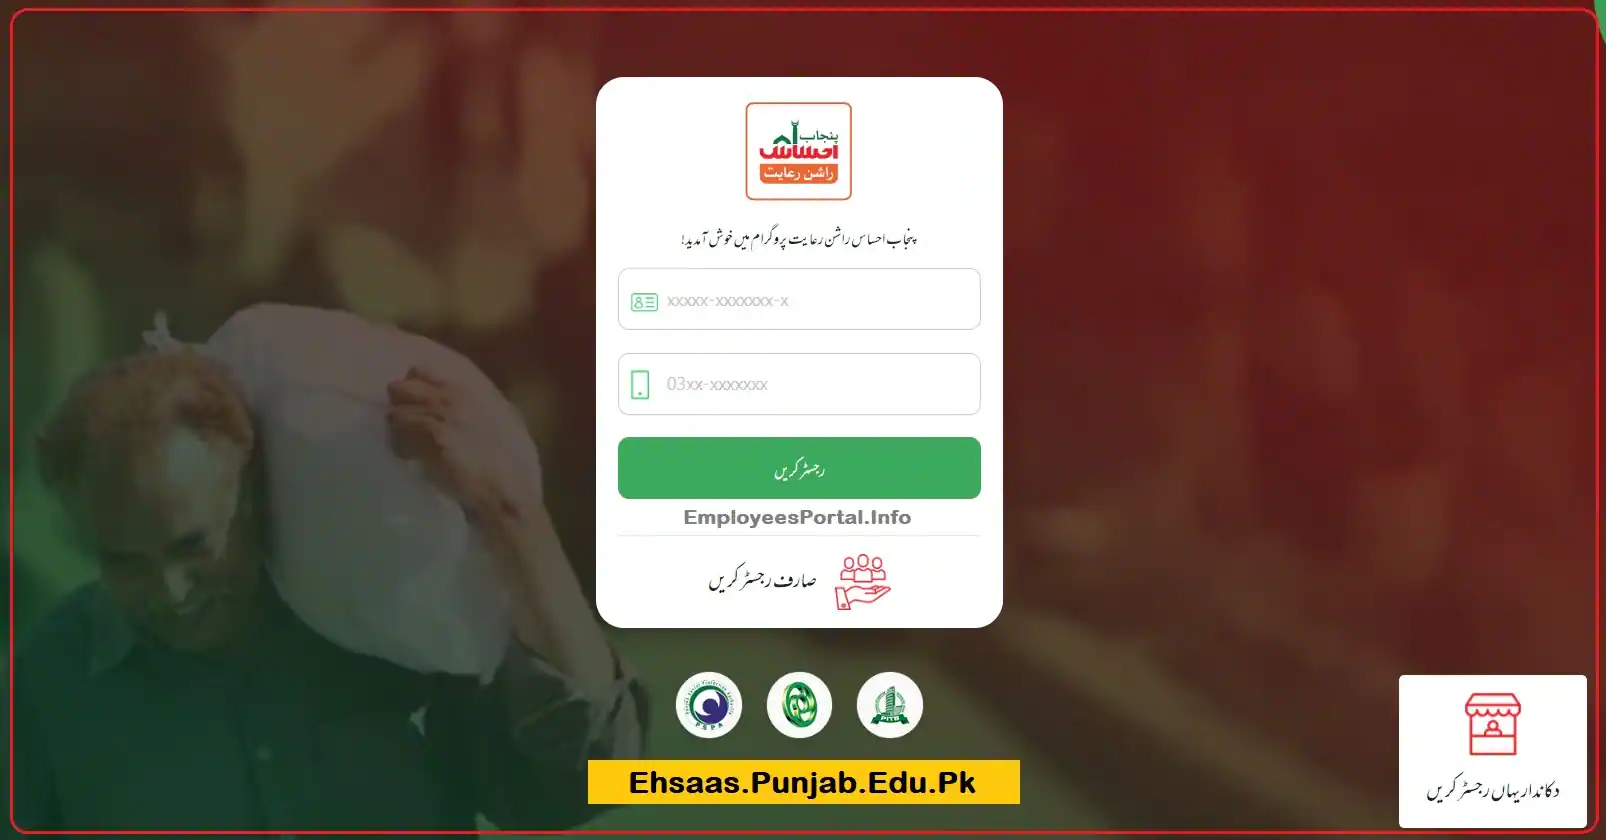 8123 Ehsaas Punjab Gov Pk Registration